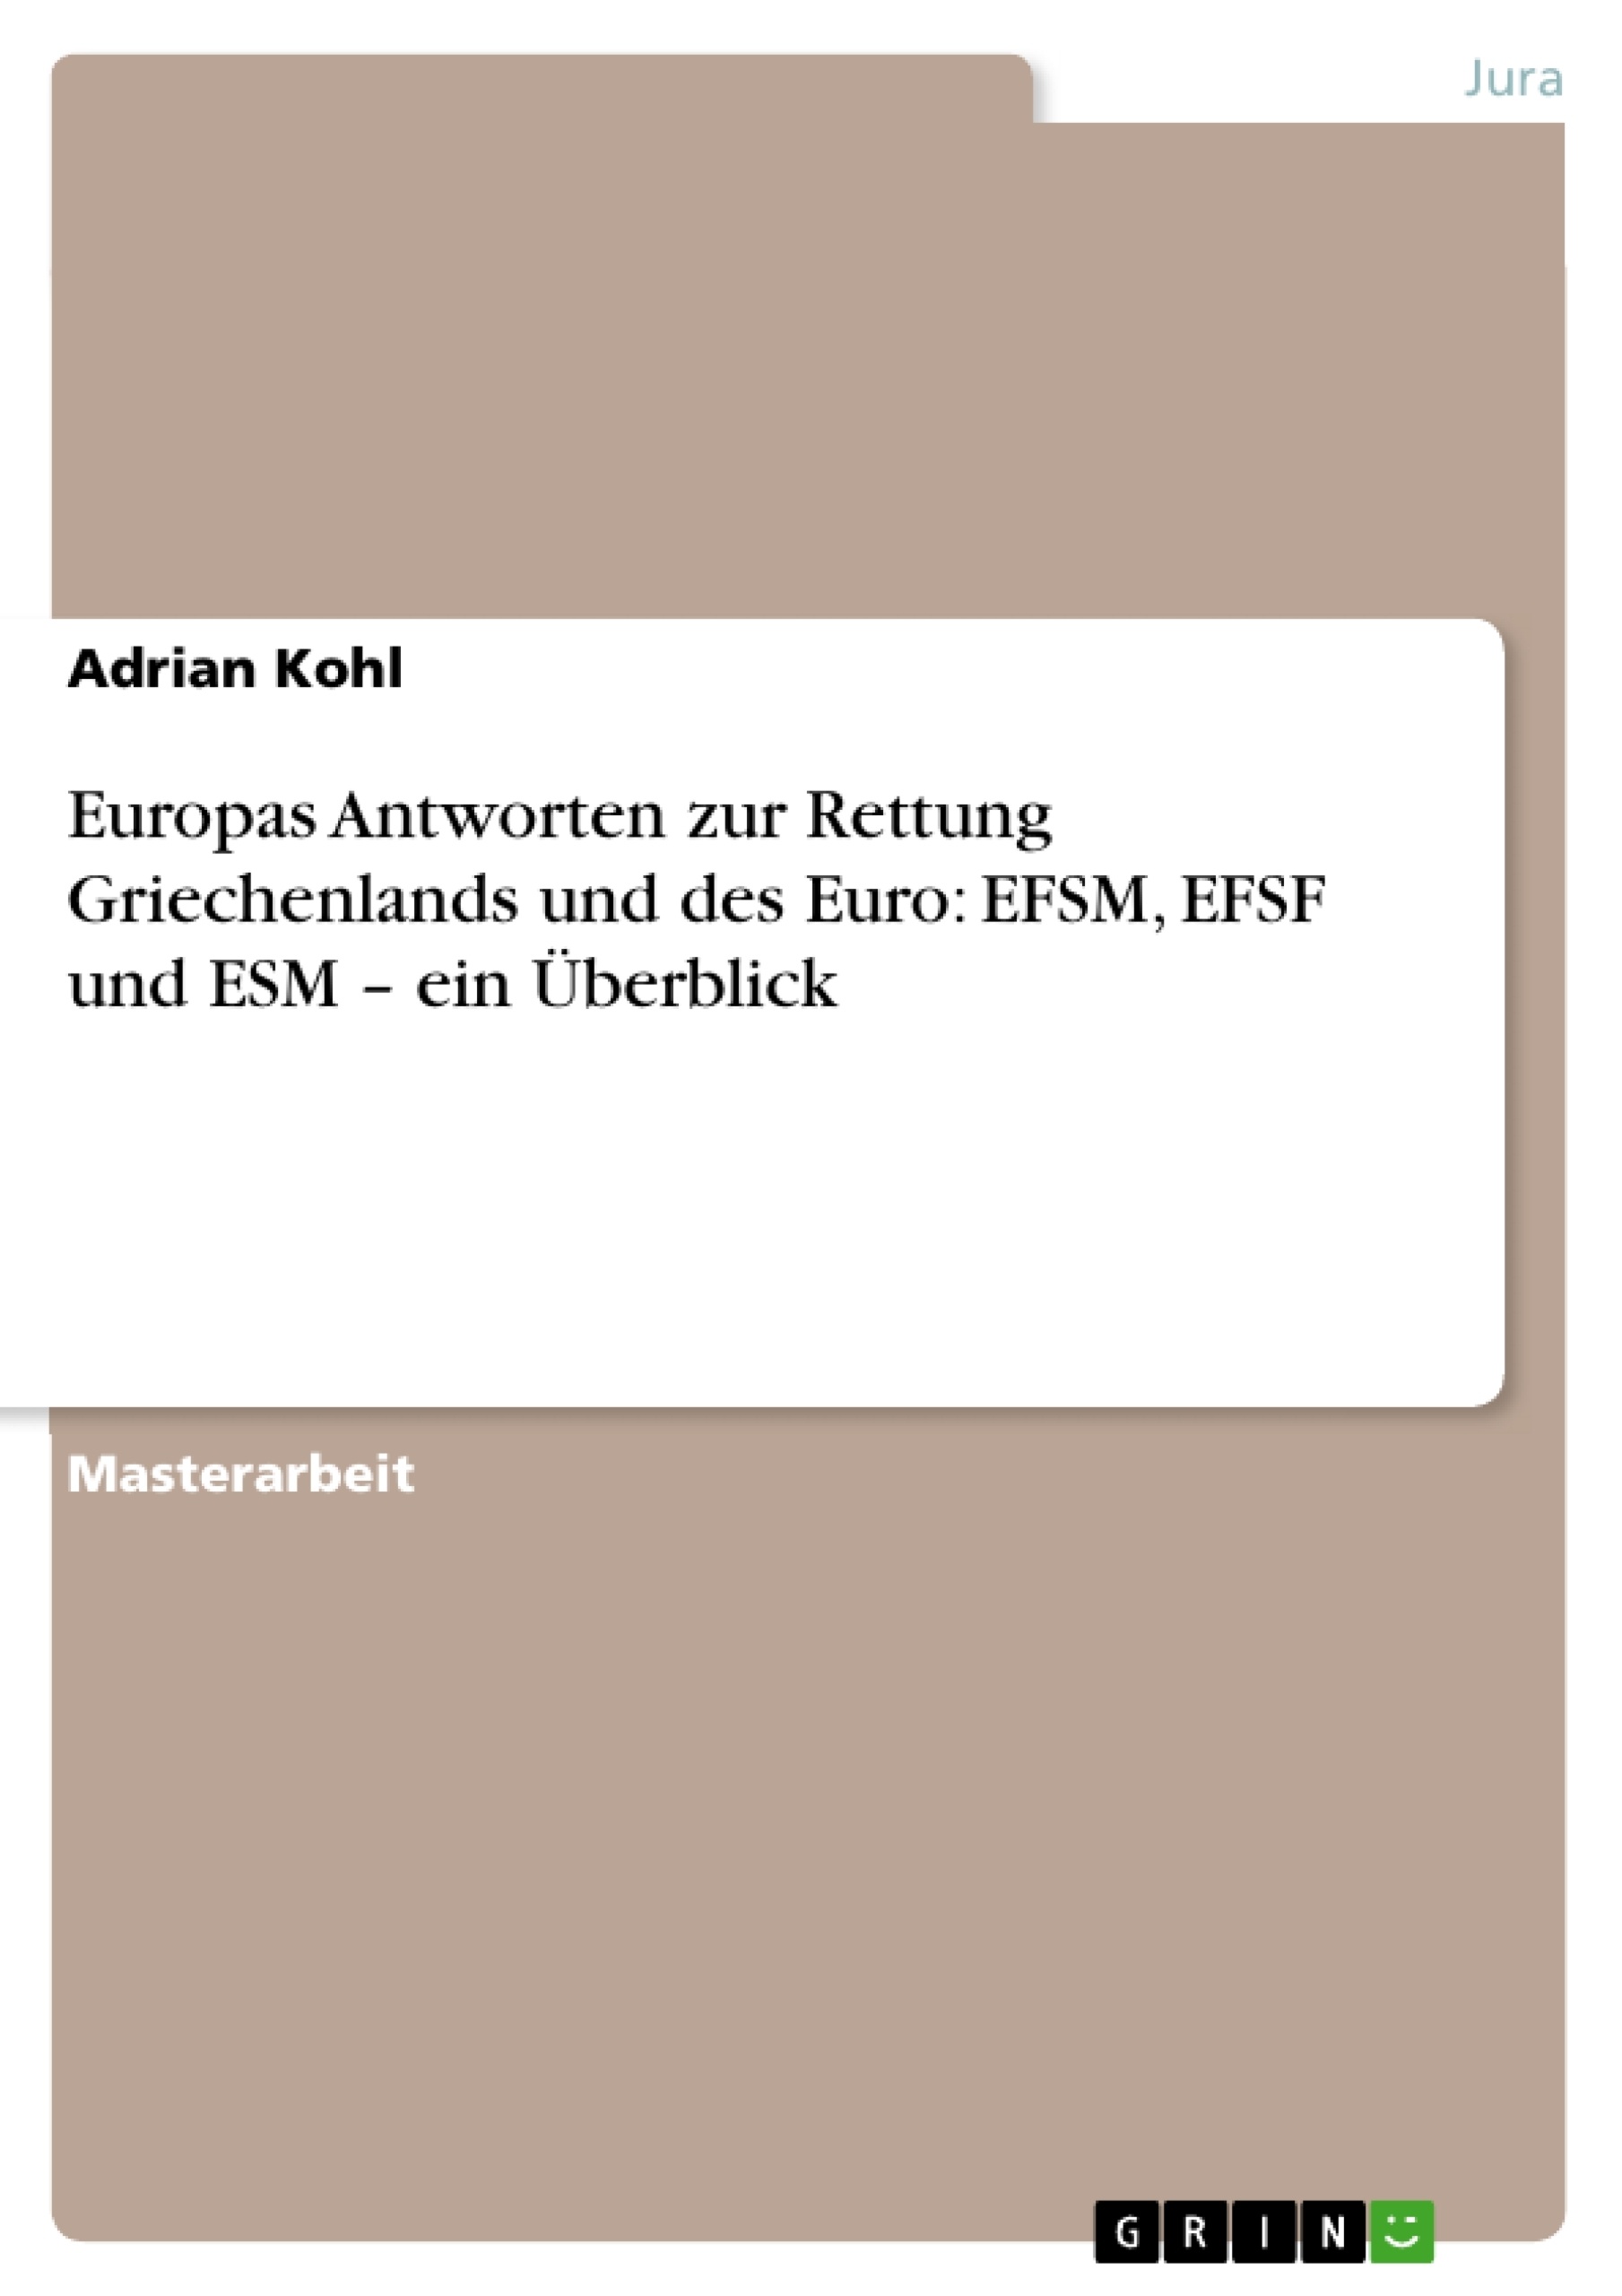 Título: Europas Antworten zur Rettung Griechenlands und des Euro: EFSM, EFSF und ESM – ein Überblick